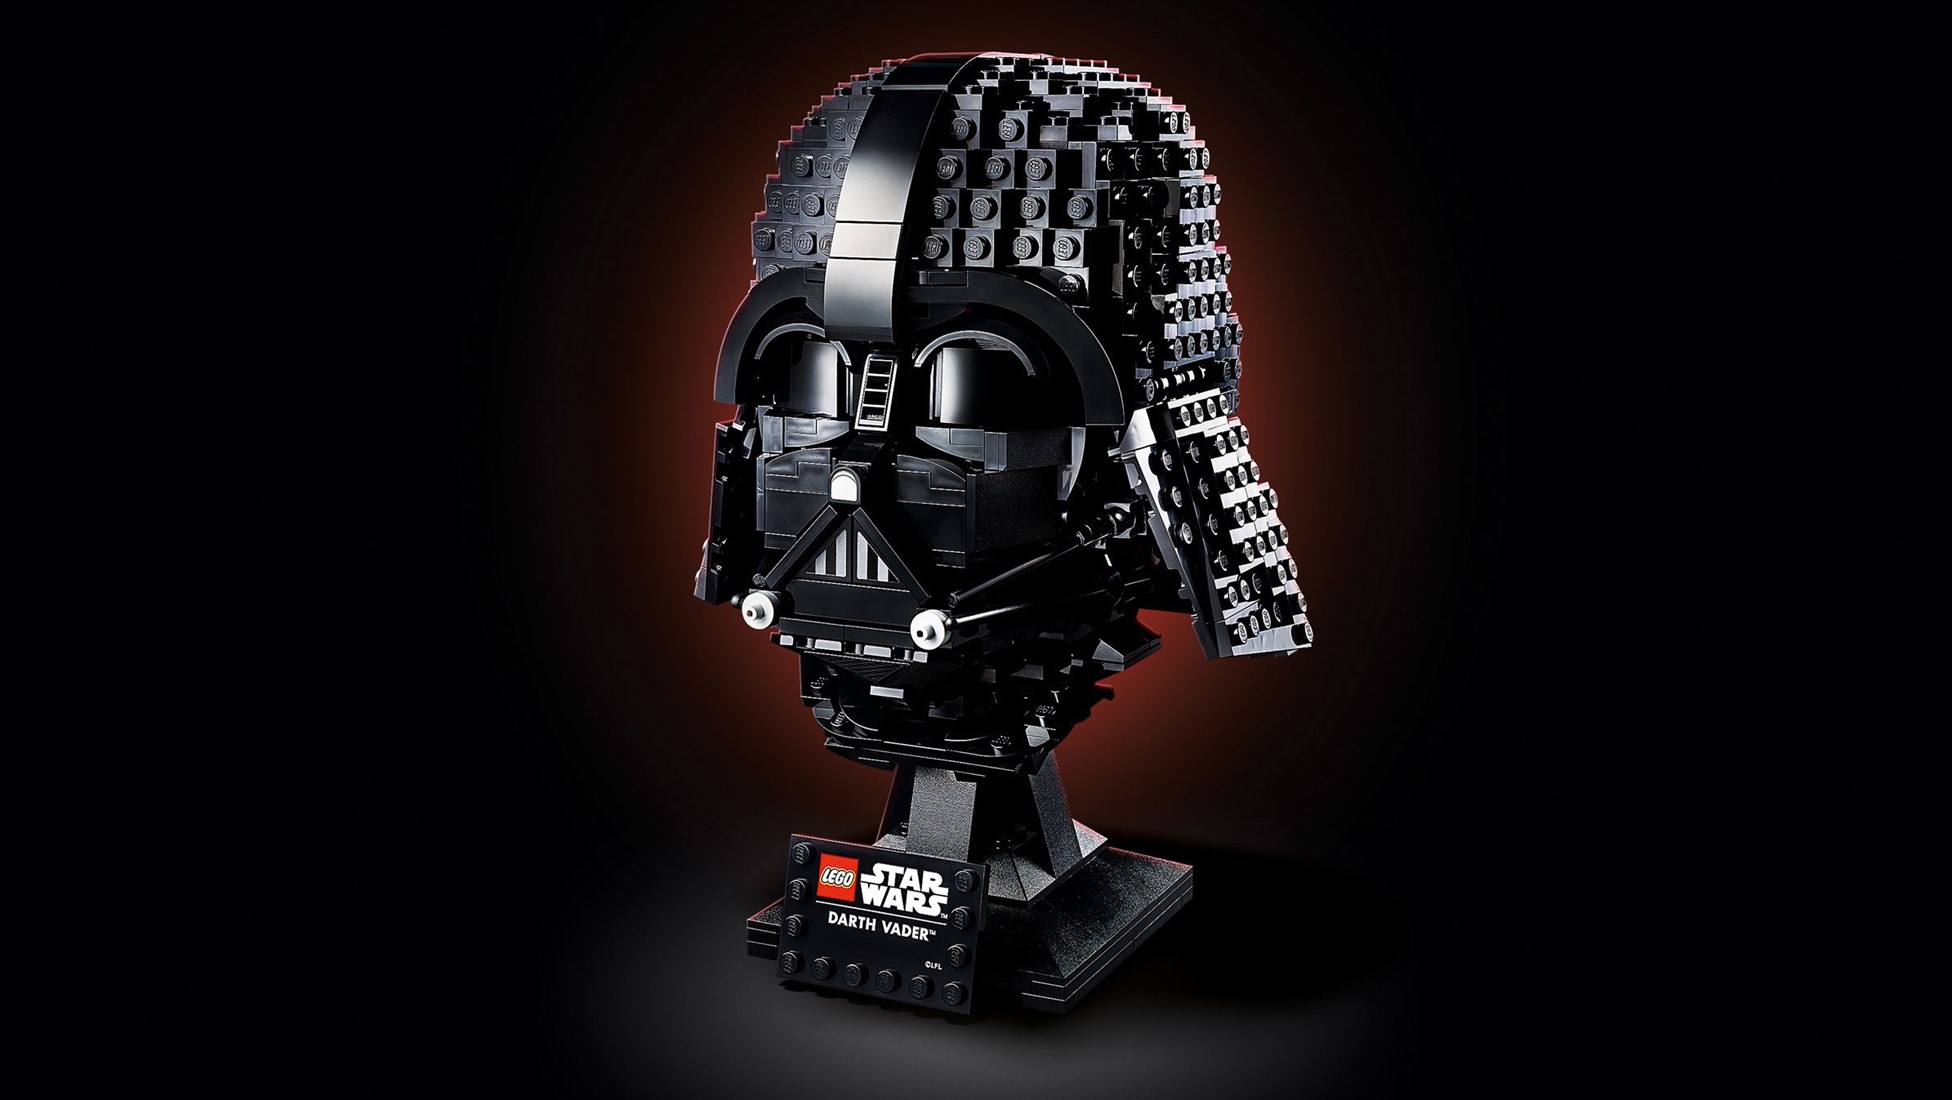 LEGO Star Wars Le casque de Dark Vador™ - 75304